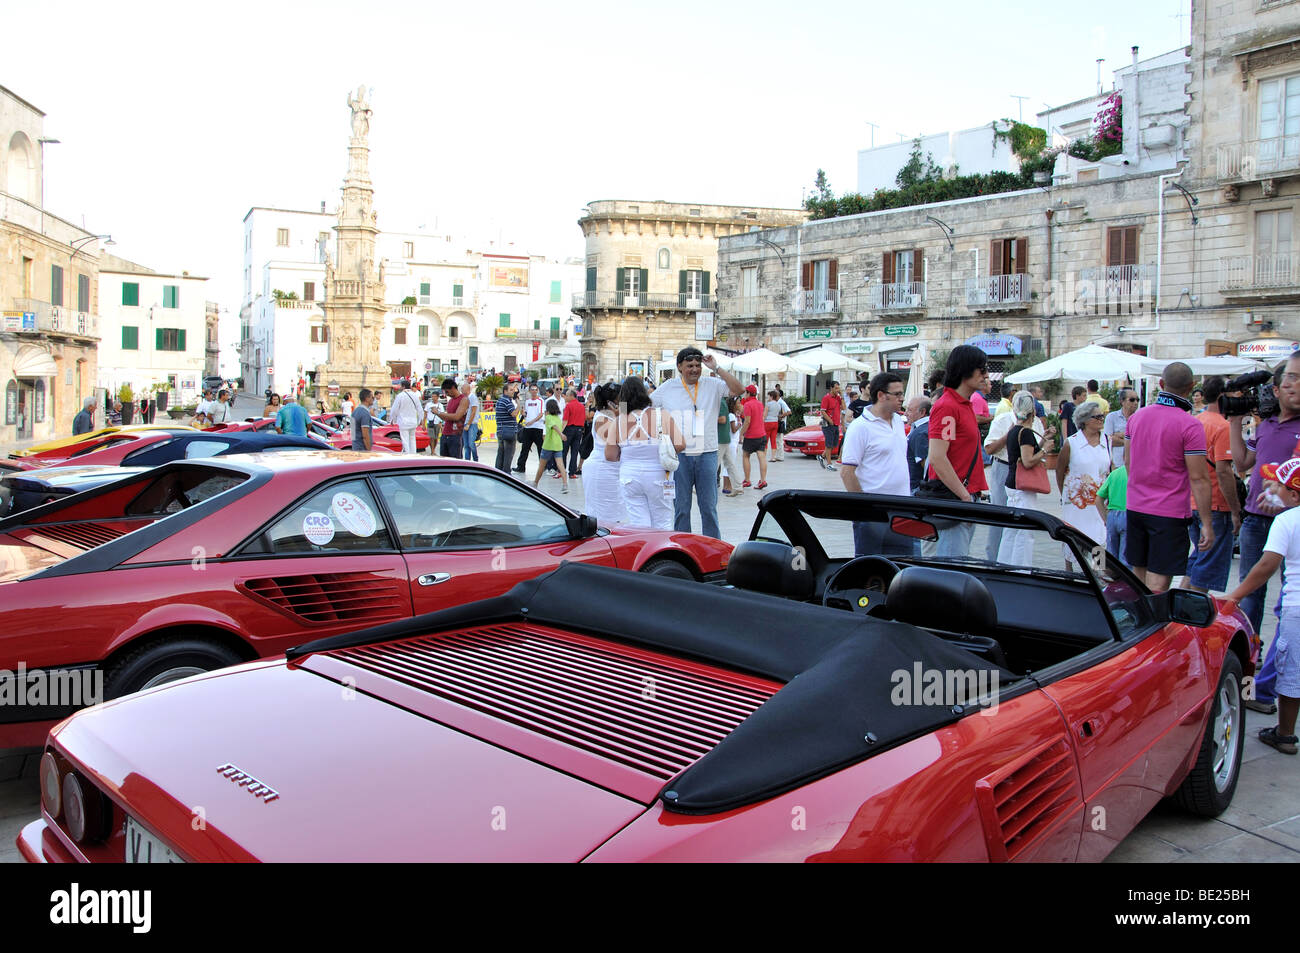 Ferrari car festival, Piazza della Liberta, Old Town, Ostuni, Brindisi Province, Puglia Region, Italy Stock Photo